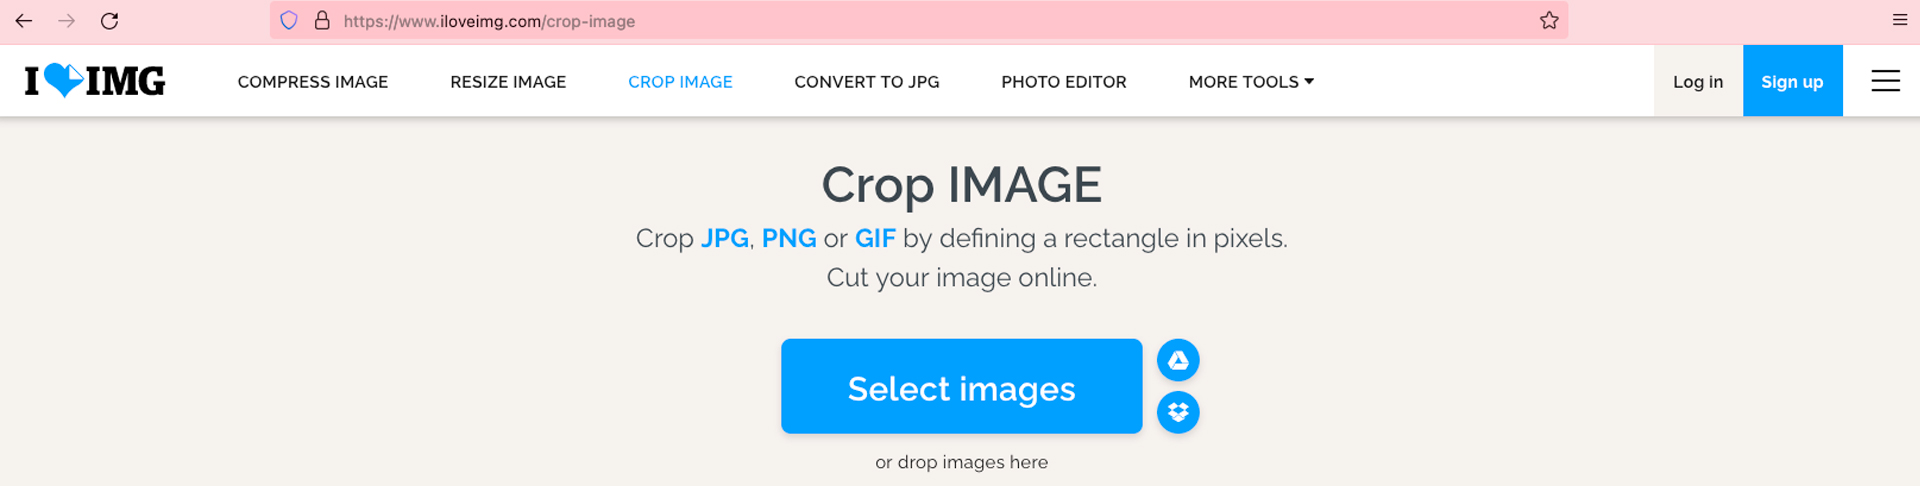 pragmacom.eu rendre facile web création graphique recardrer tailles images pour réseaux sociaux illustration 1